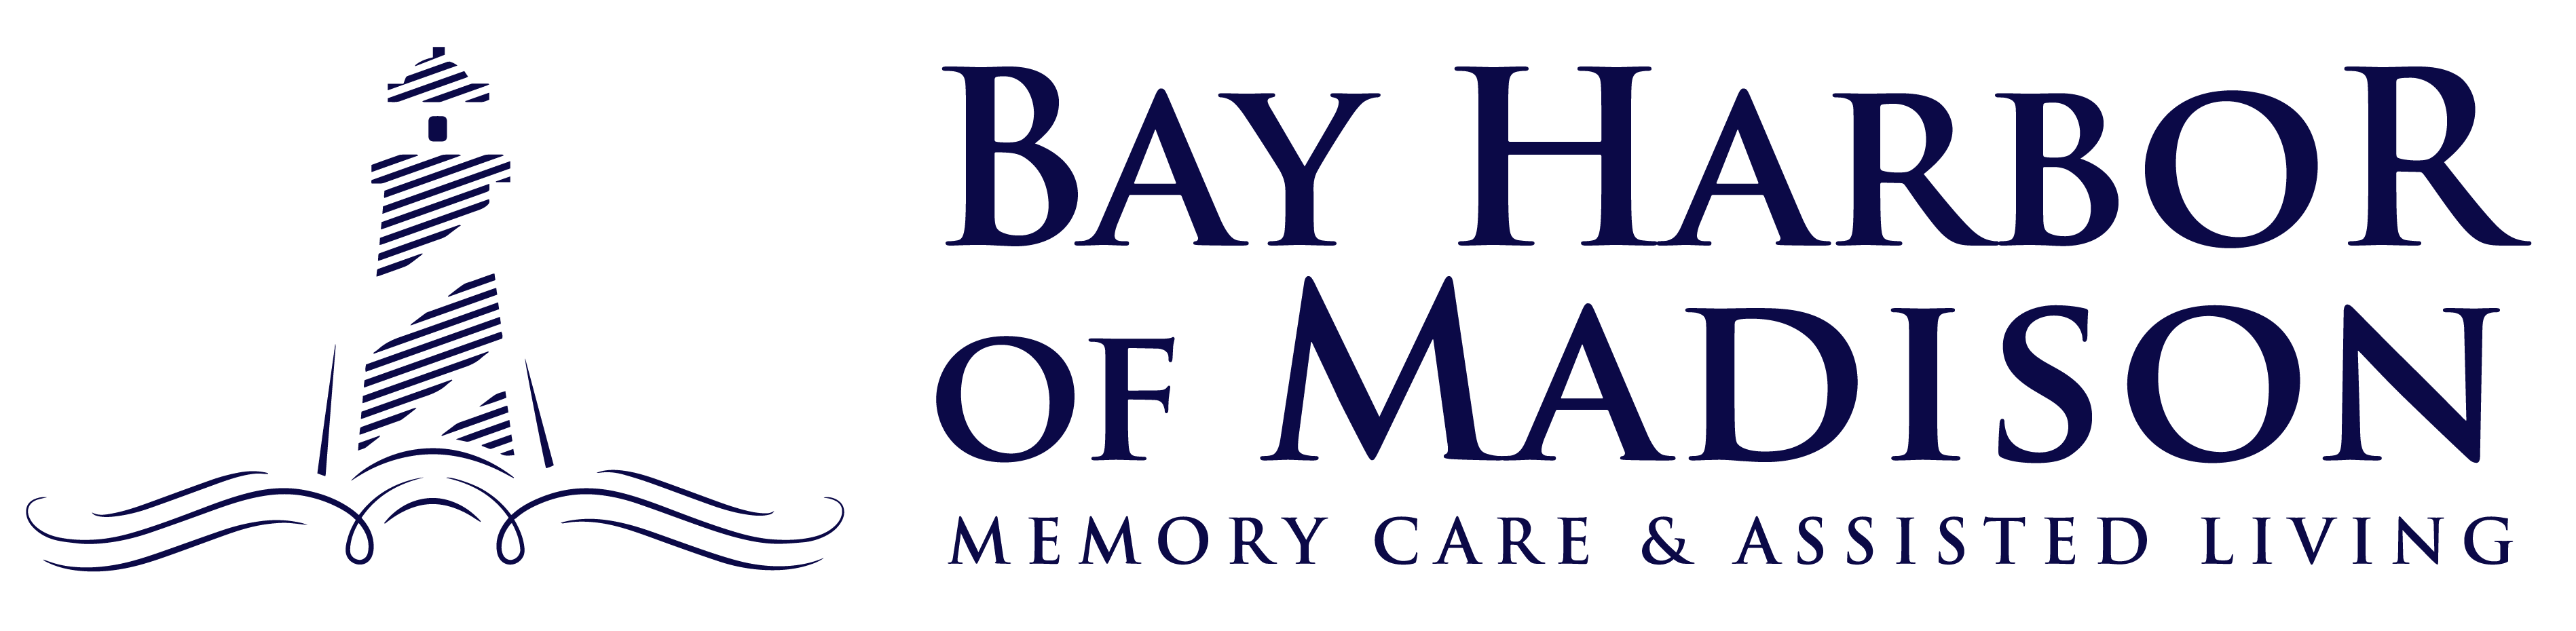 Bay Harbor of Madison Logo plain blue